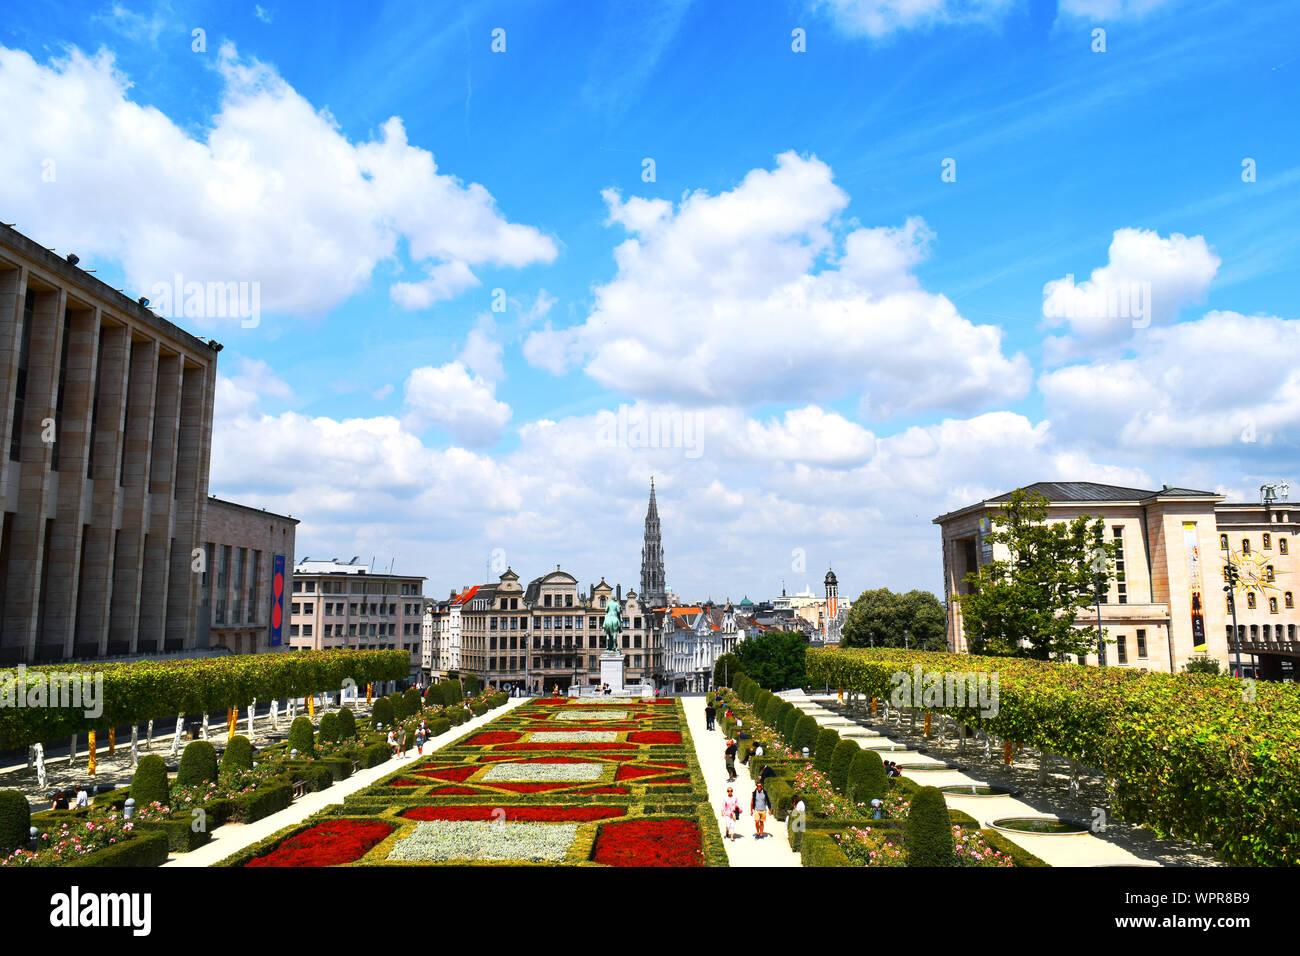 Bruxelles /Belgique - Juillet 9, 2019 : Paysage de Bruxelles place principale. Quartier historique de la ville - Mont des Arts. Kunstberg. Banque D'Images